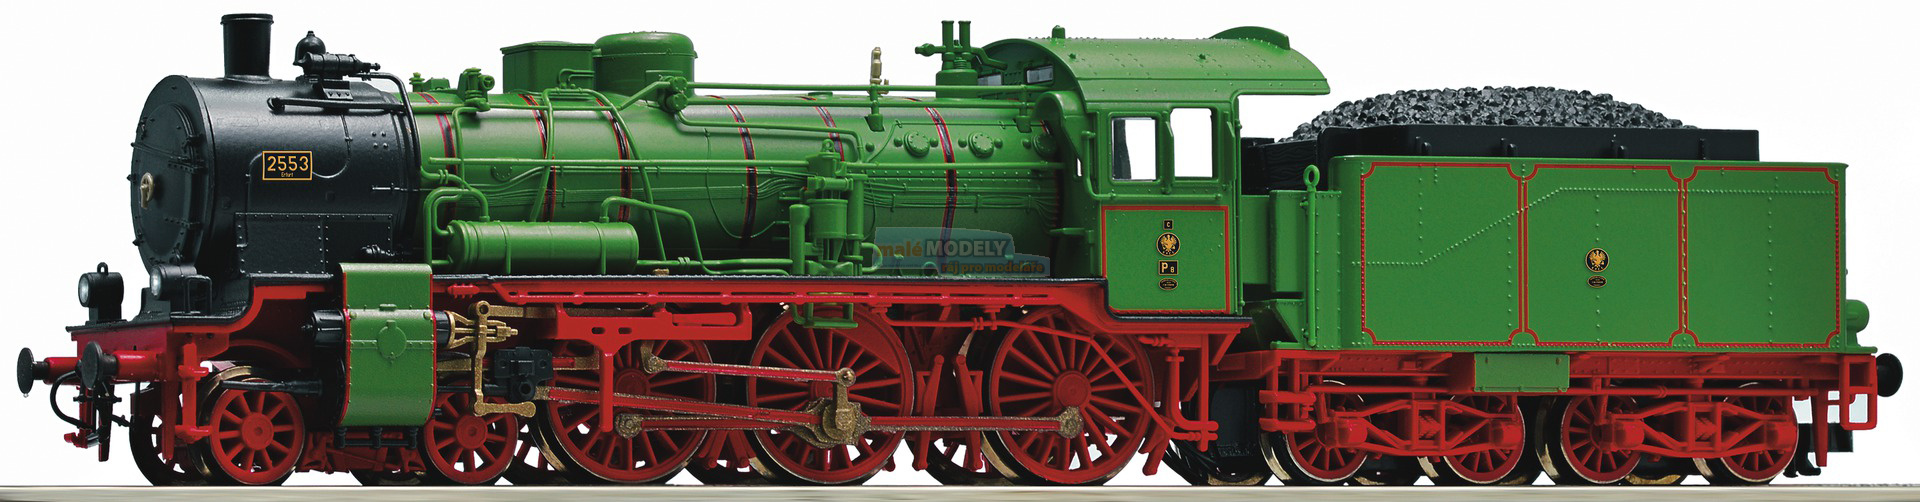 Parní lokomotiva P8 -Erfurt 2553- se zvukem